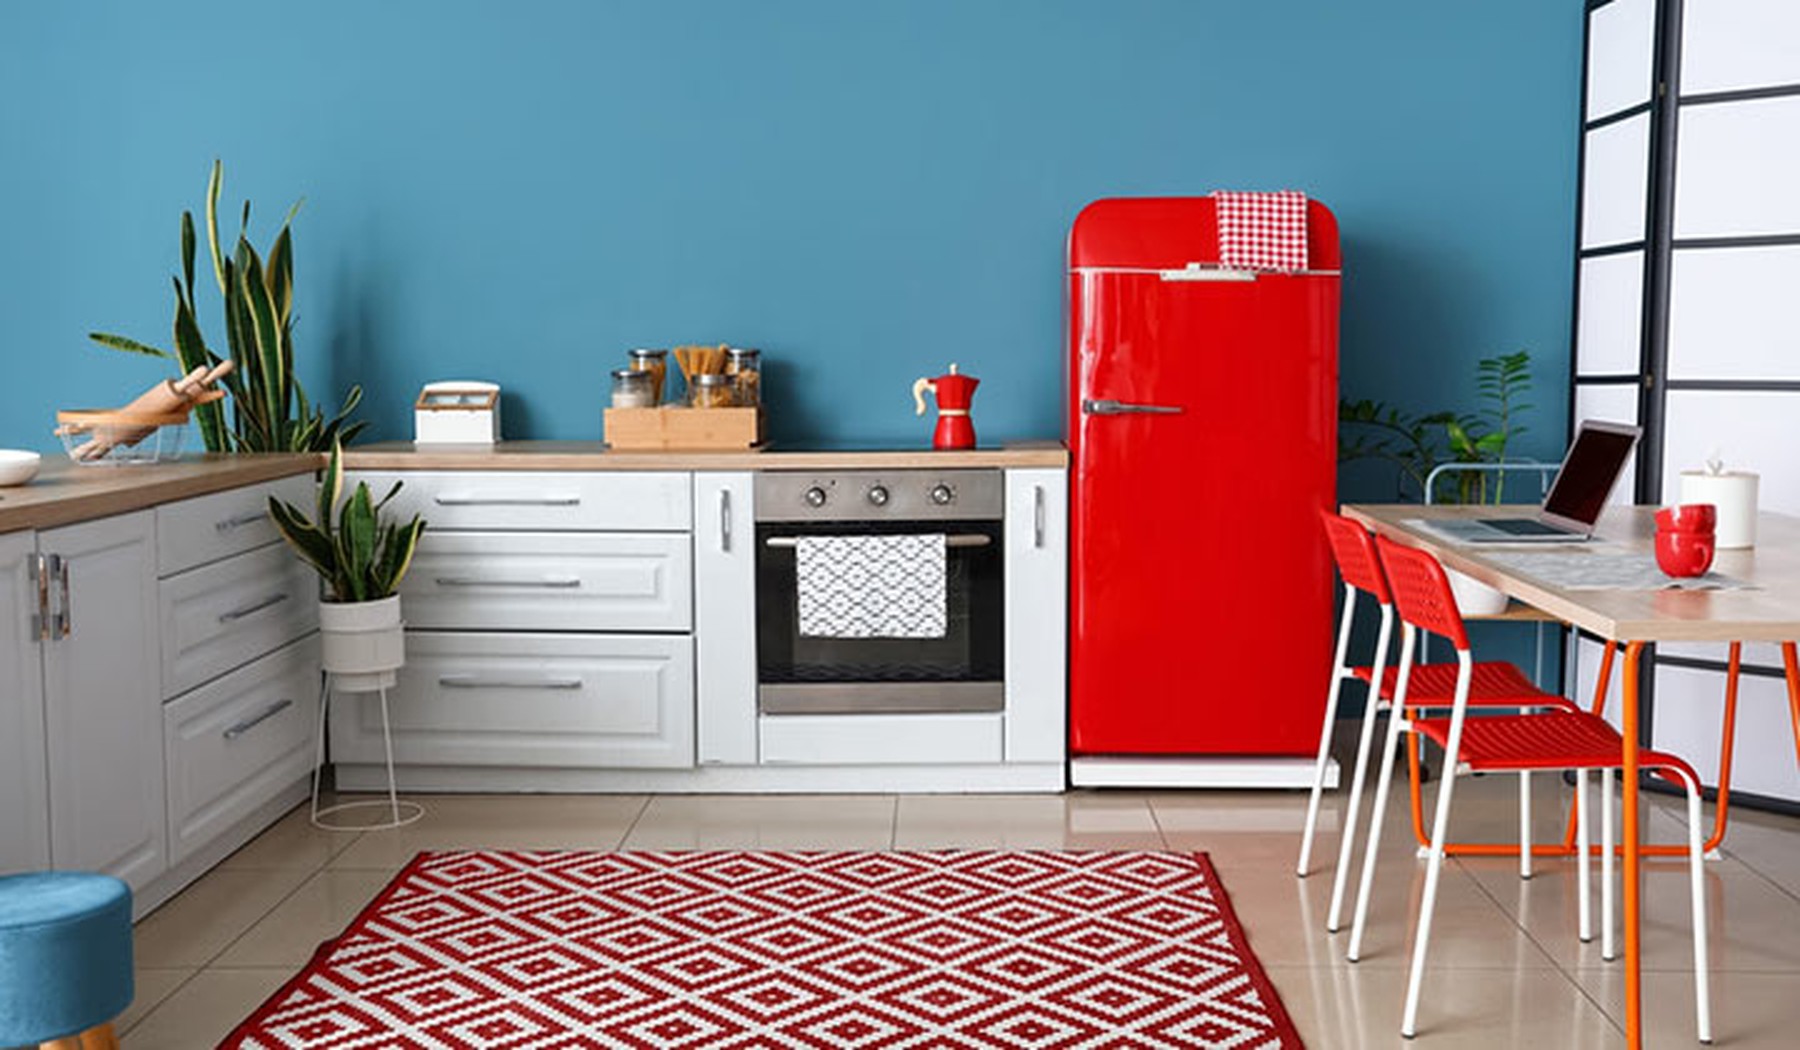 Cocina con muebles blancos y de madera, una alfombra geométrica blanca y roja y un frigorífico rojo estilo retro